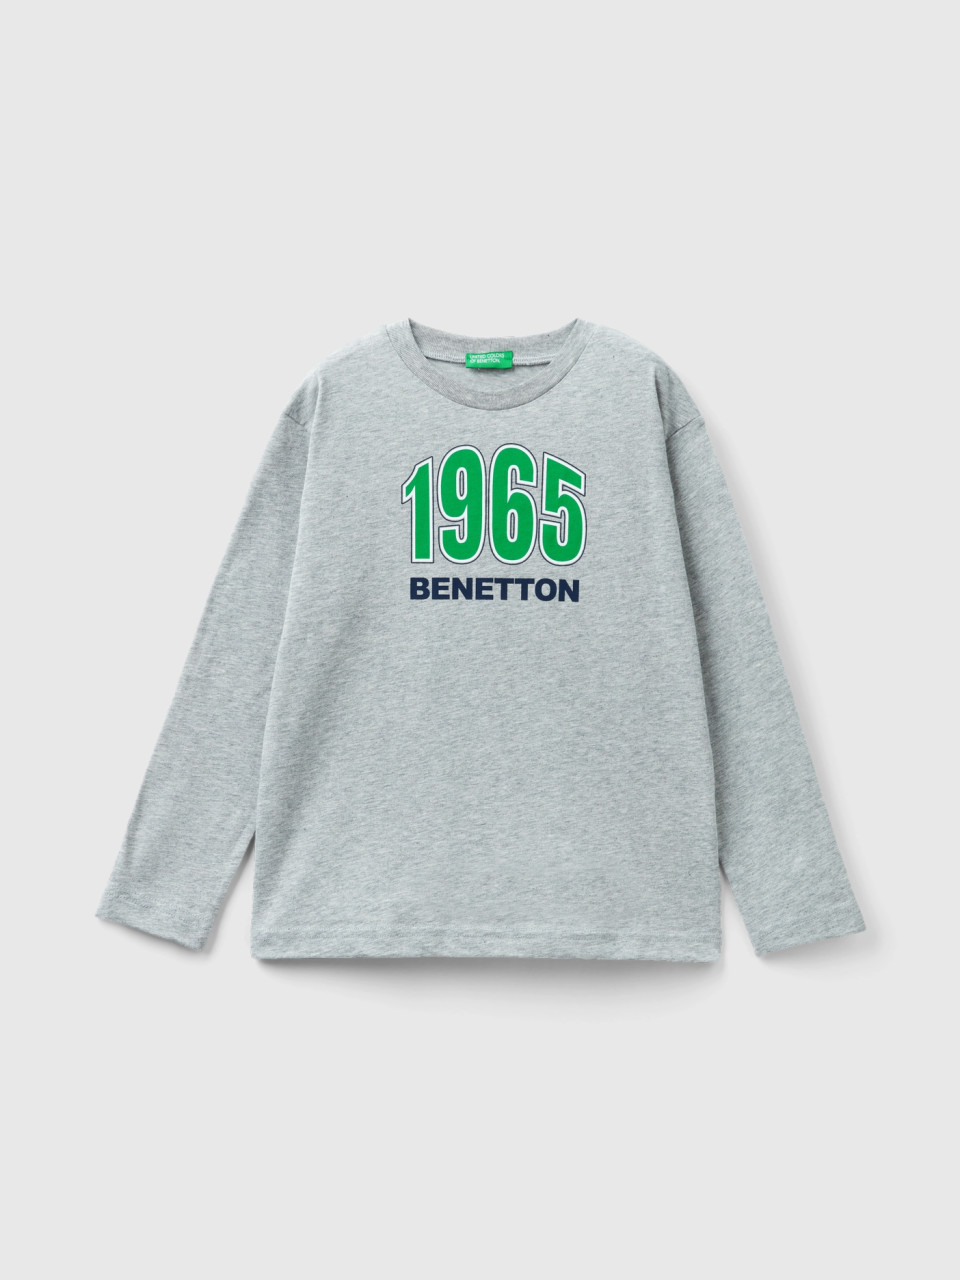 Benetton, Long Sleeve Organic Cotton T-shirt, Light Gray, Kids